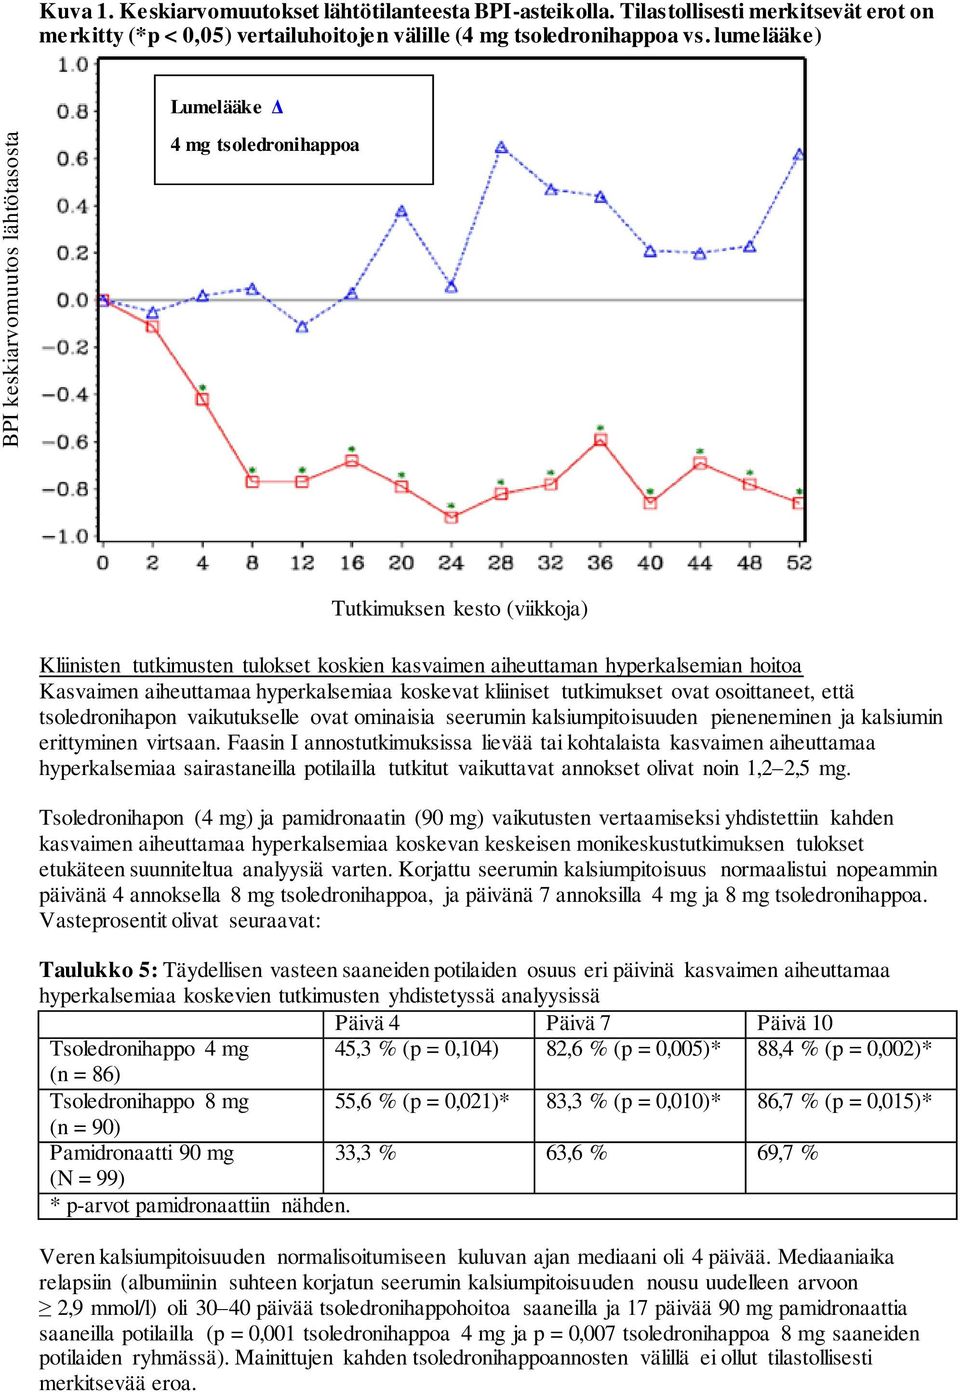 lumelääke) Lumelääke Δ 4 mg tsoledronihappoa Tutkimuksen kesto (viikkoja) Kliinisten tutkimusten tulokset koskien kasvaimen aiheuttaman hyperkalsemian hoitoa Kasvaimen aiheuttamaa hyperkalsemiaa